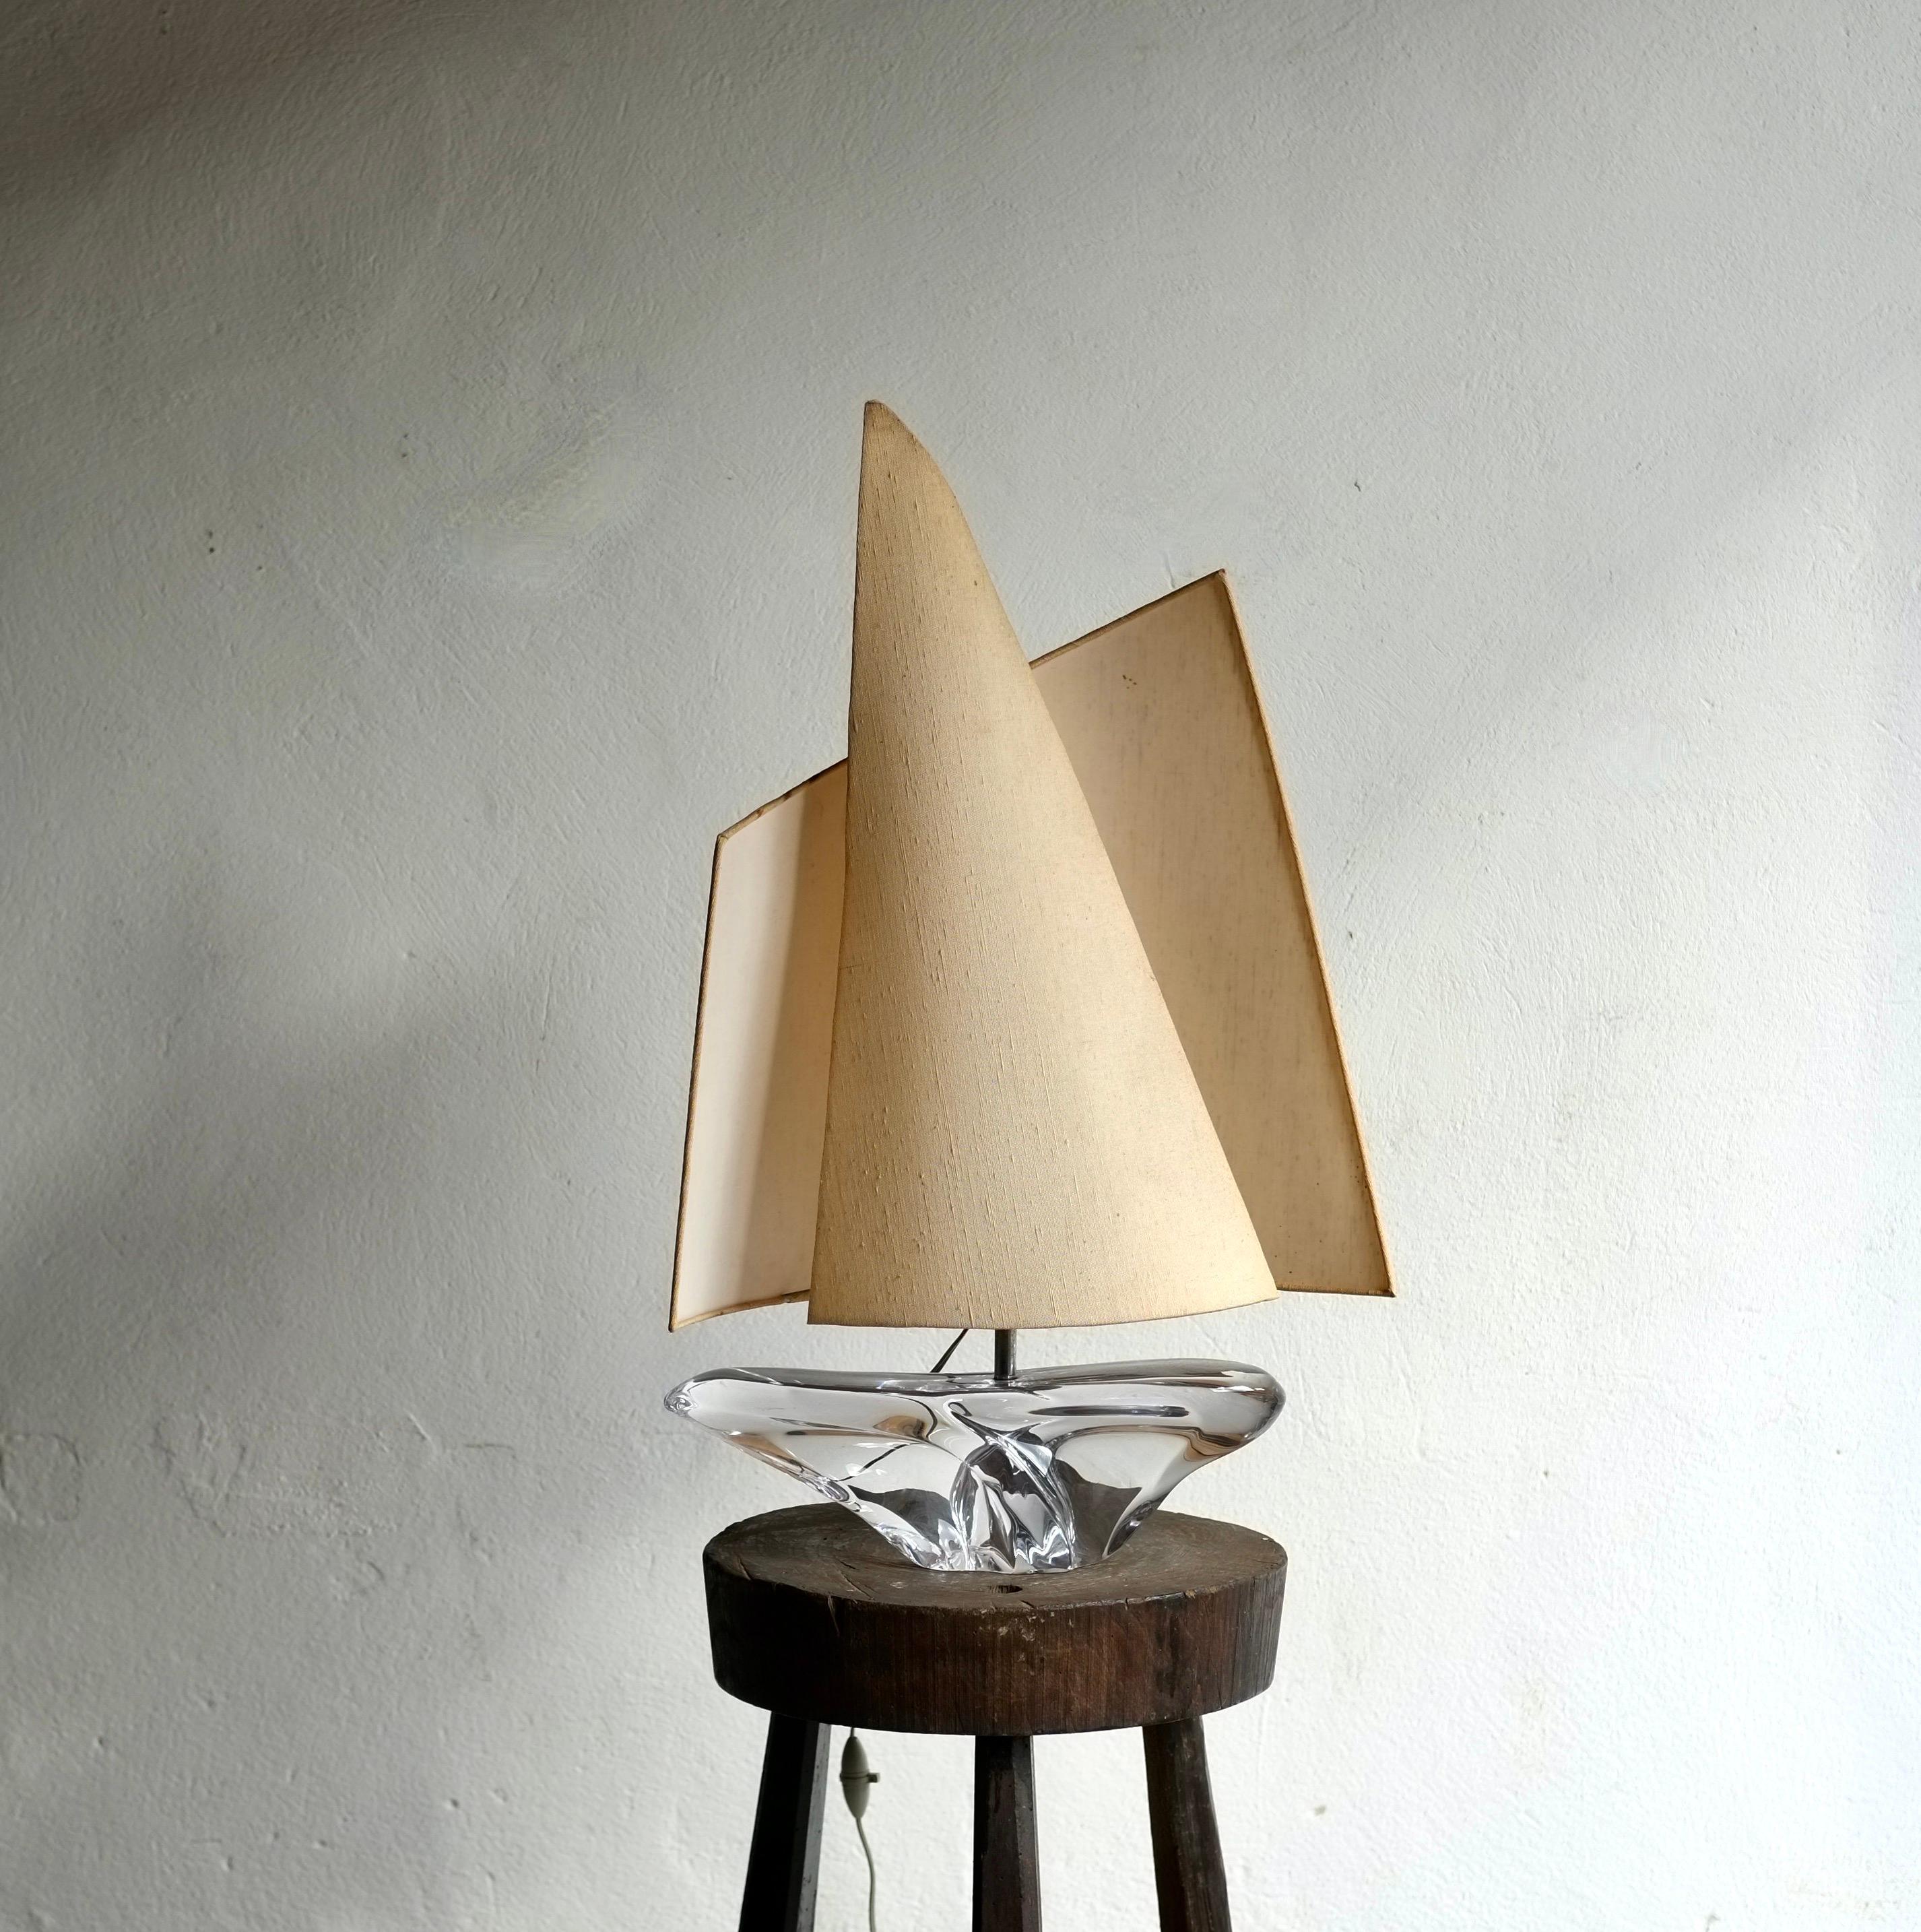 Lampe en forme de grand voilier fabriquée par Daum, en France, dans les années 1960.

Base en verre de cristal avec un abat-jour sculptural de style voile. En très bon état vintage, sans dommage.